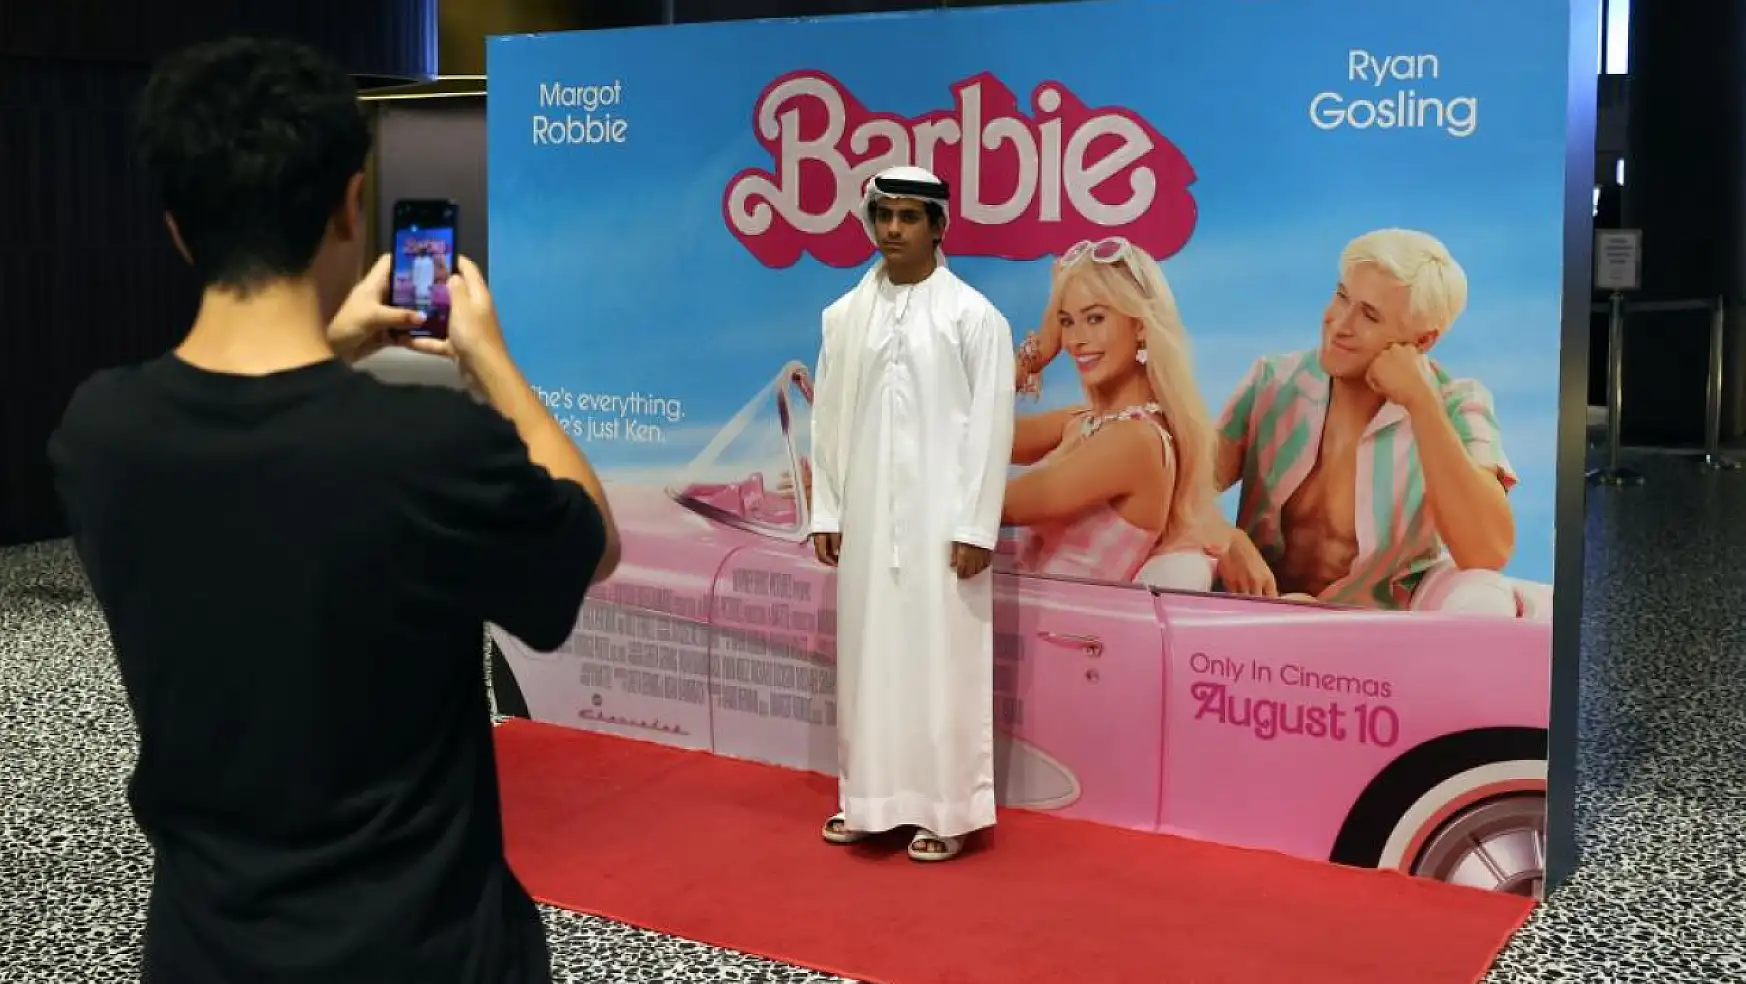 Barbie filmi Dubai'de vizyona girdi. Birçok ülkede yasaklanmıştı